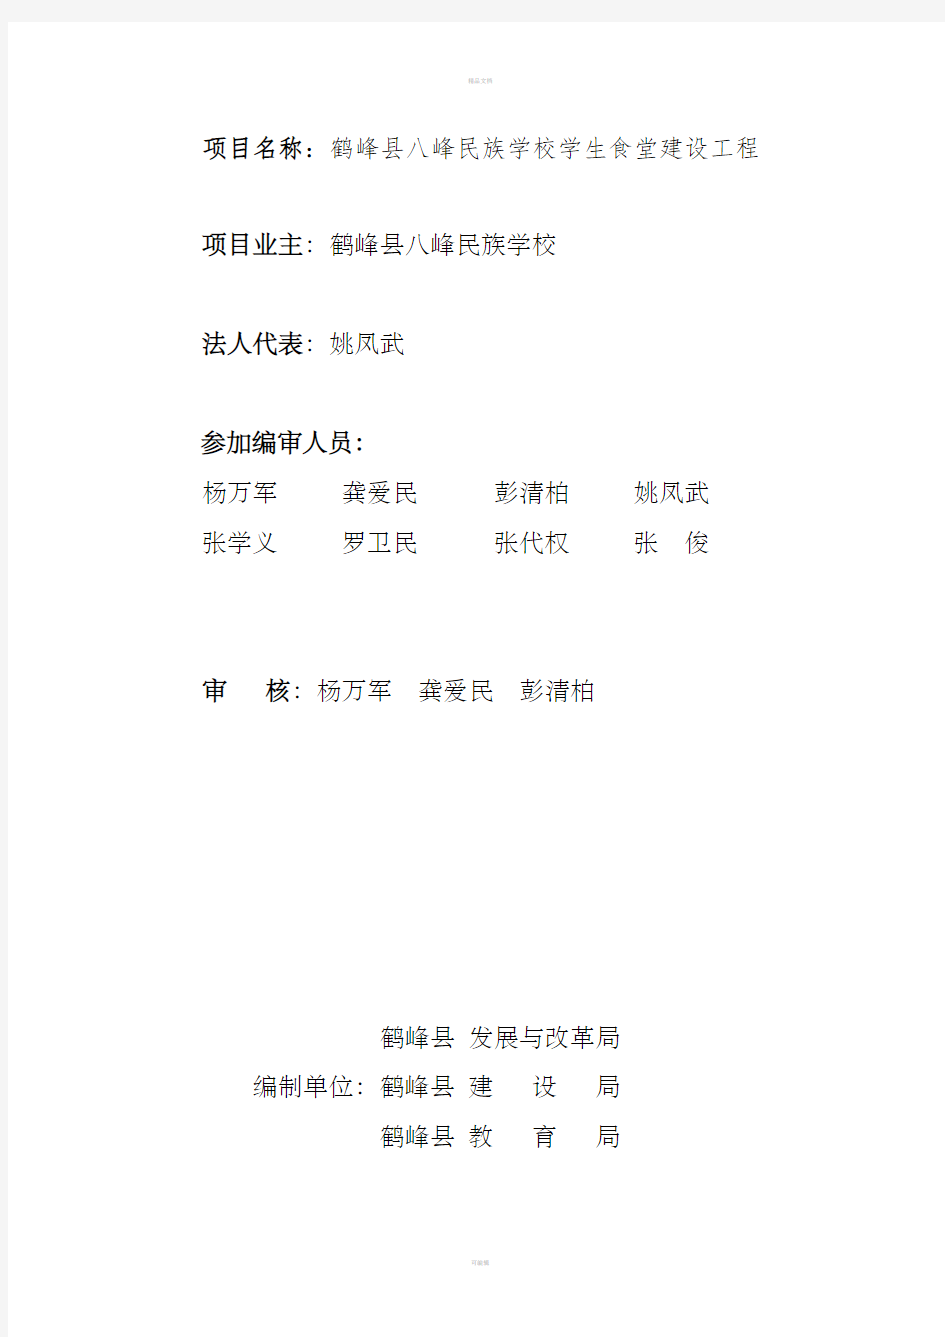 鹤峰县八峰民族学楼学生食堂建设工程项目建议书